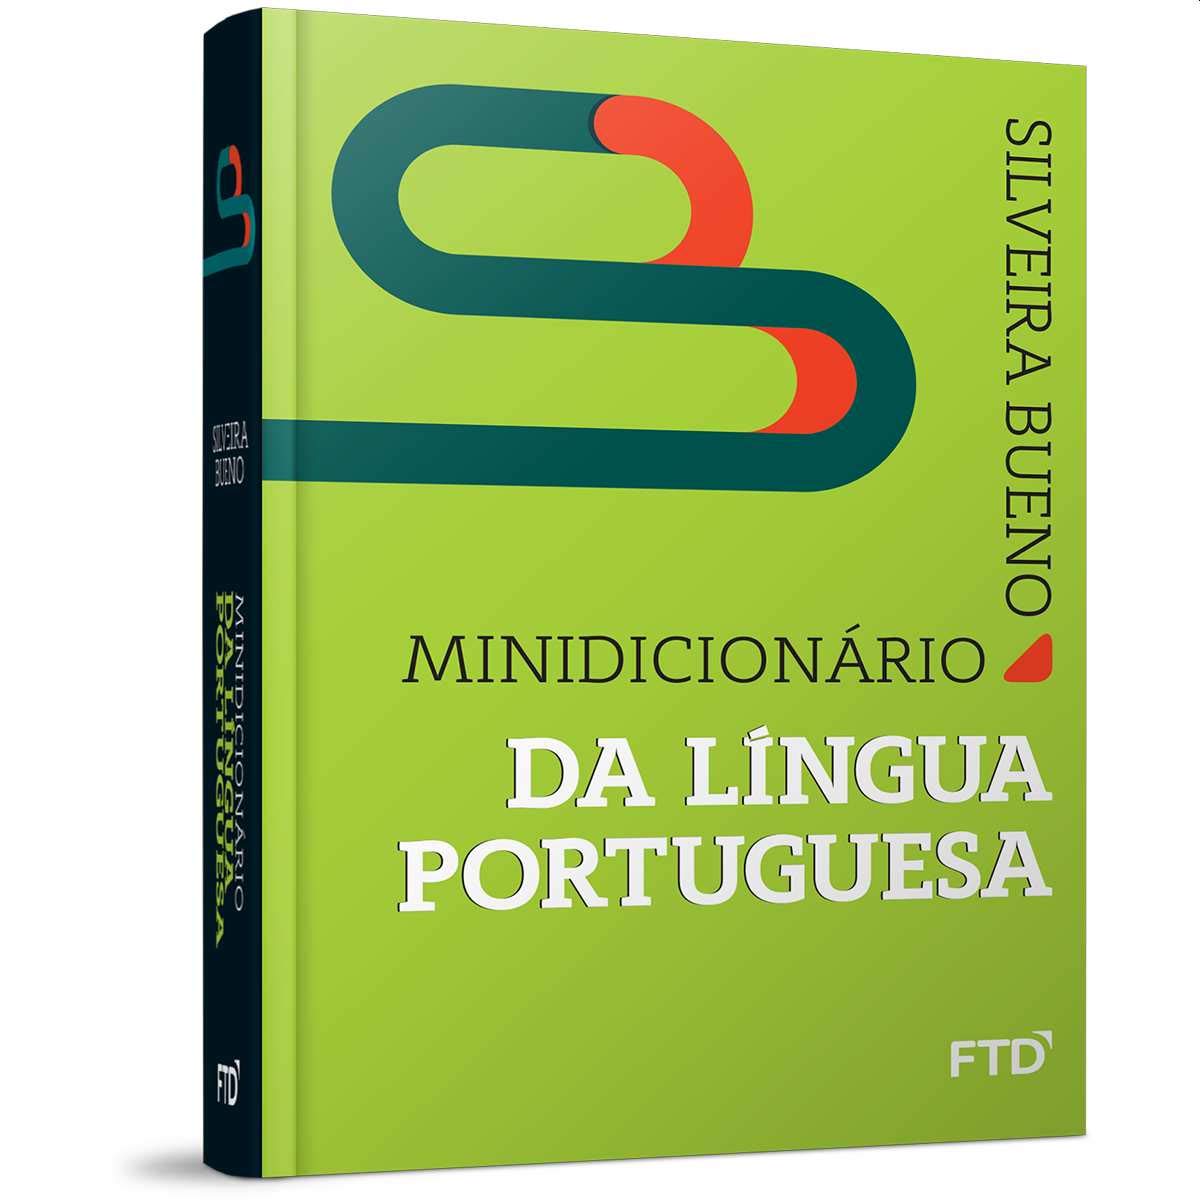 Mindicionario da Lingua Portuguesa Silveira Bueno FTD